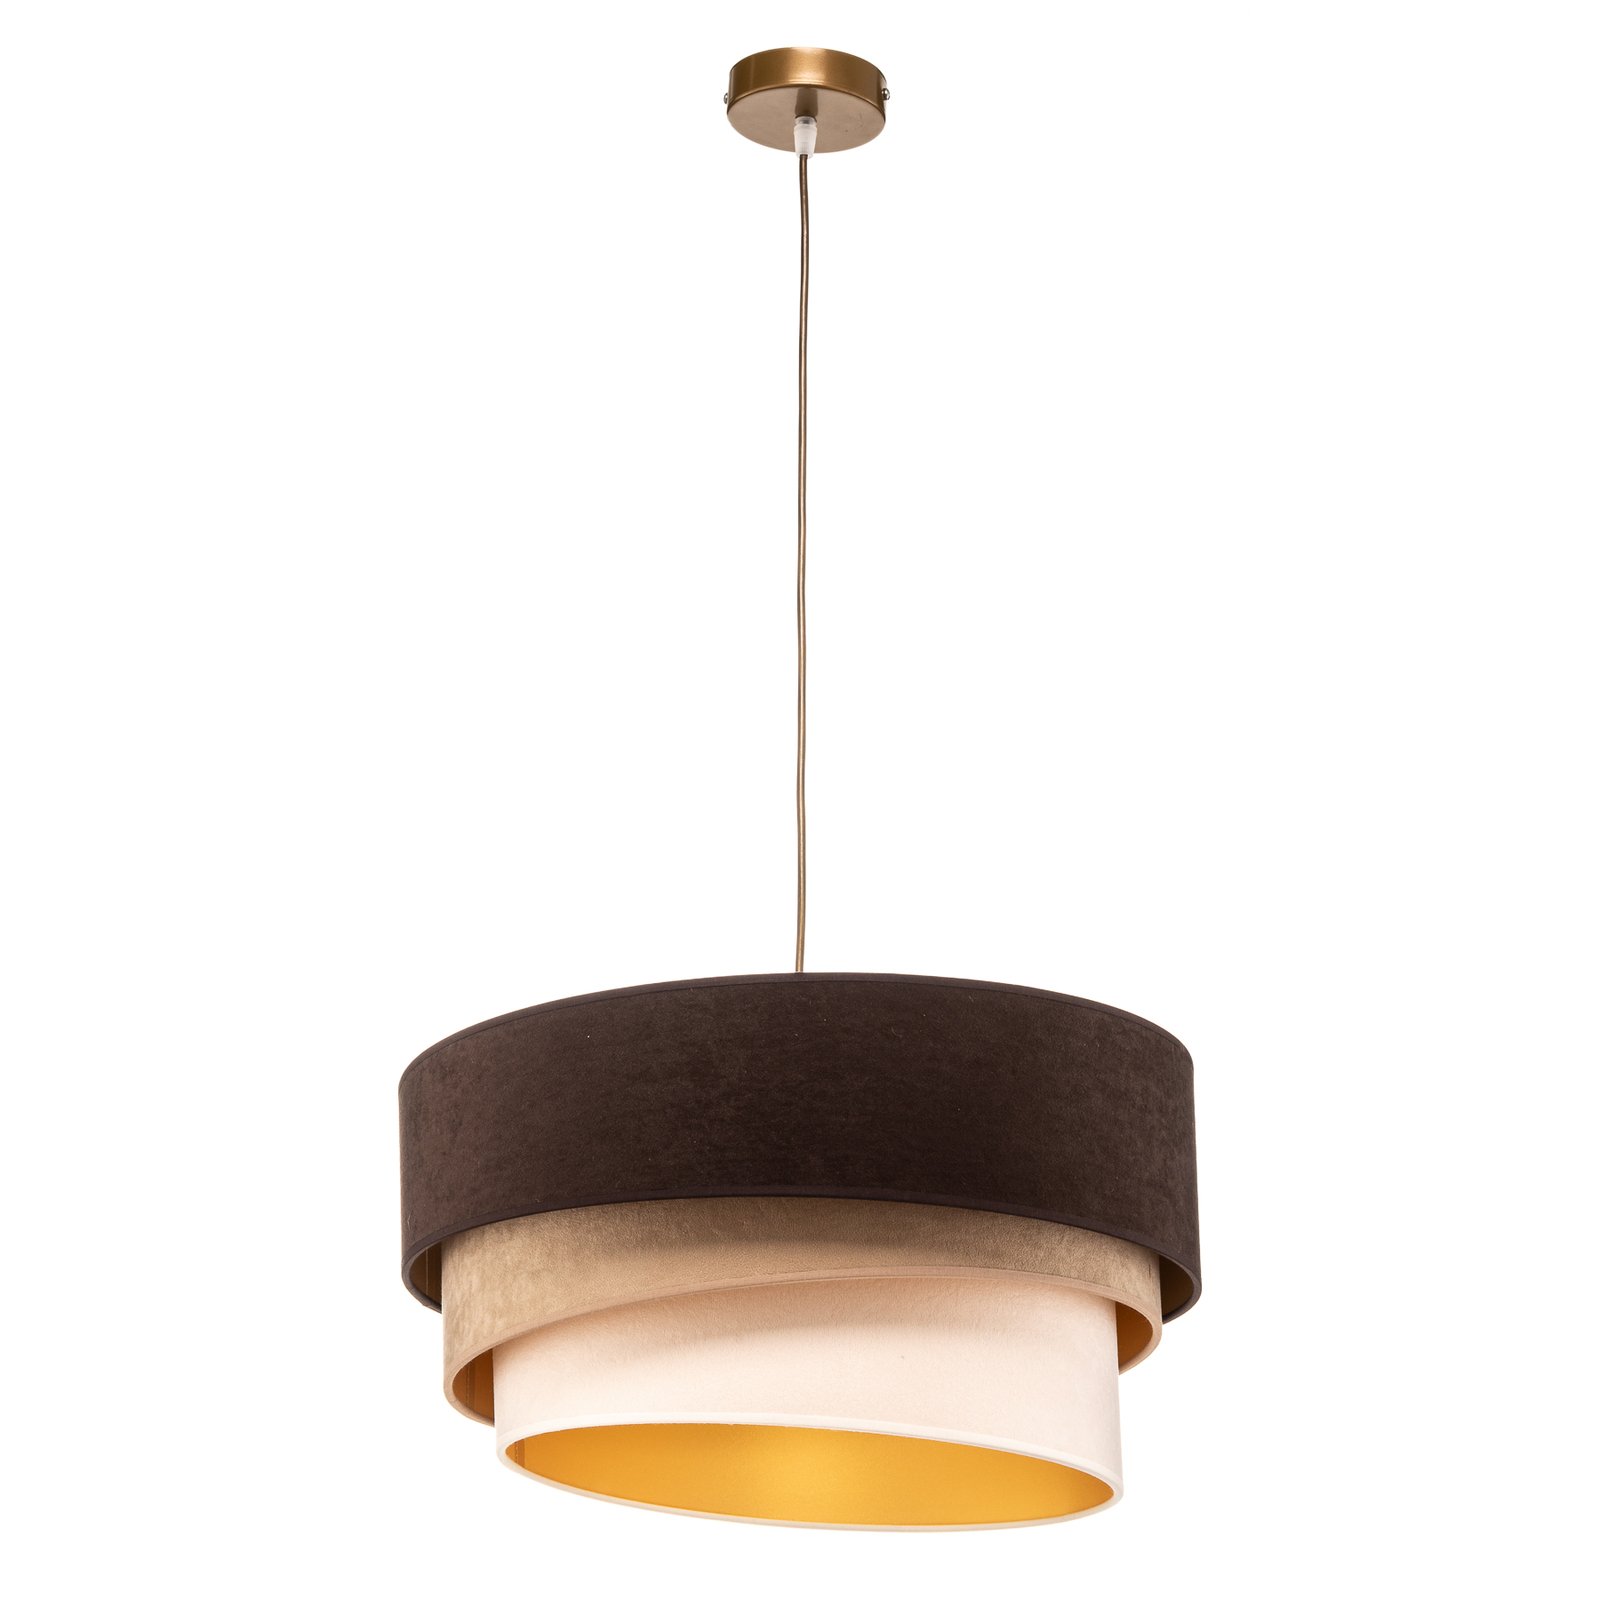 Devon hanging light, brown/beige/ecru/gold Ø 45 cm